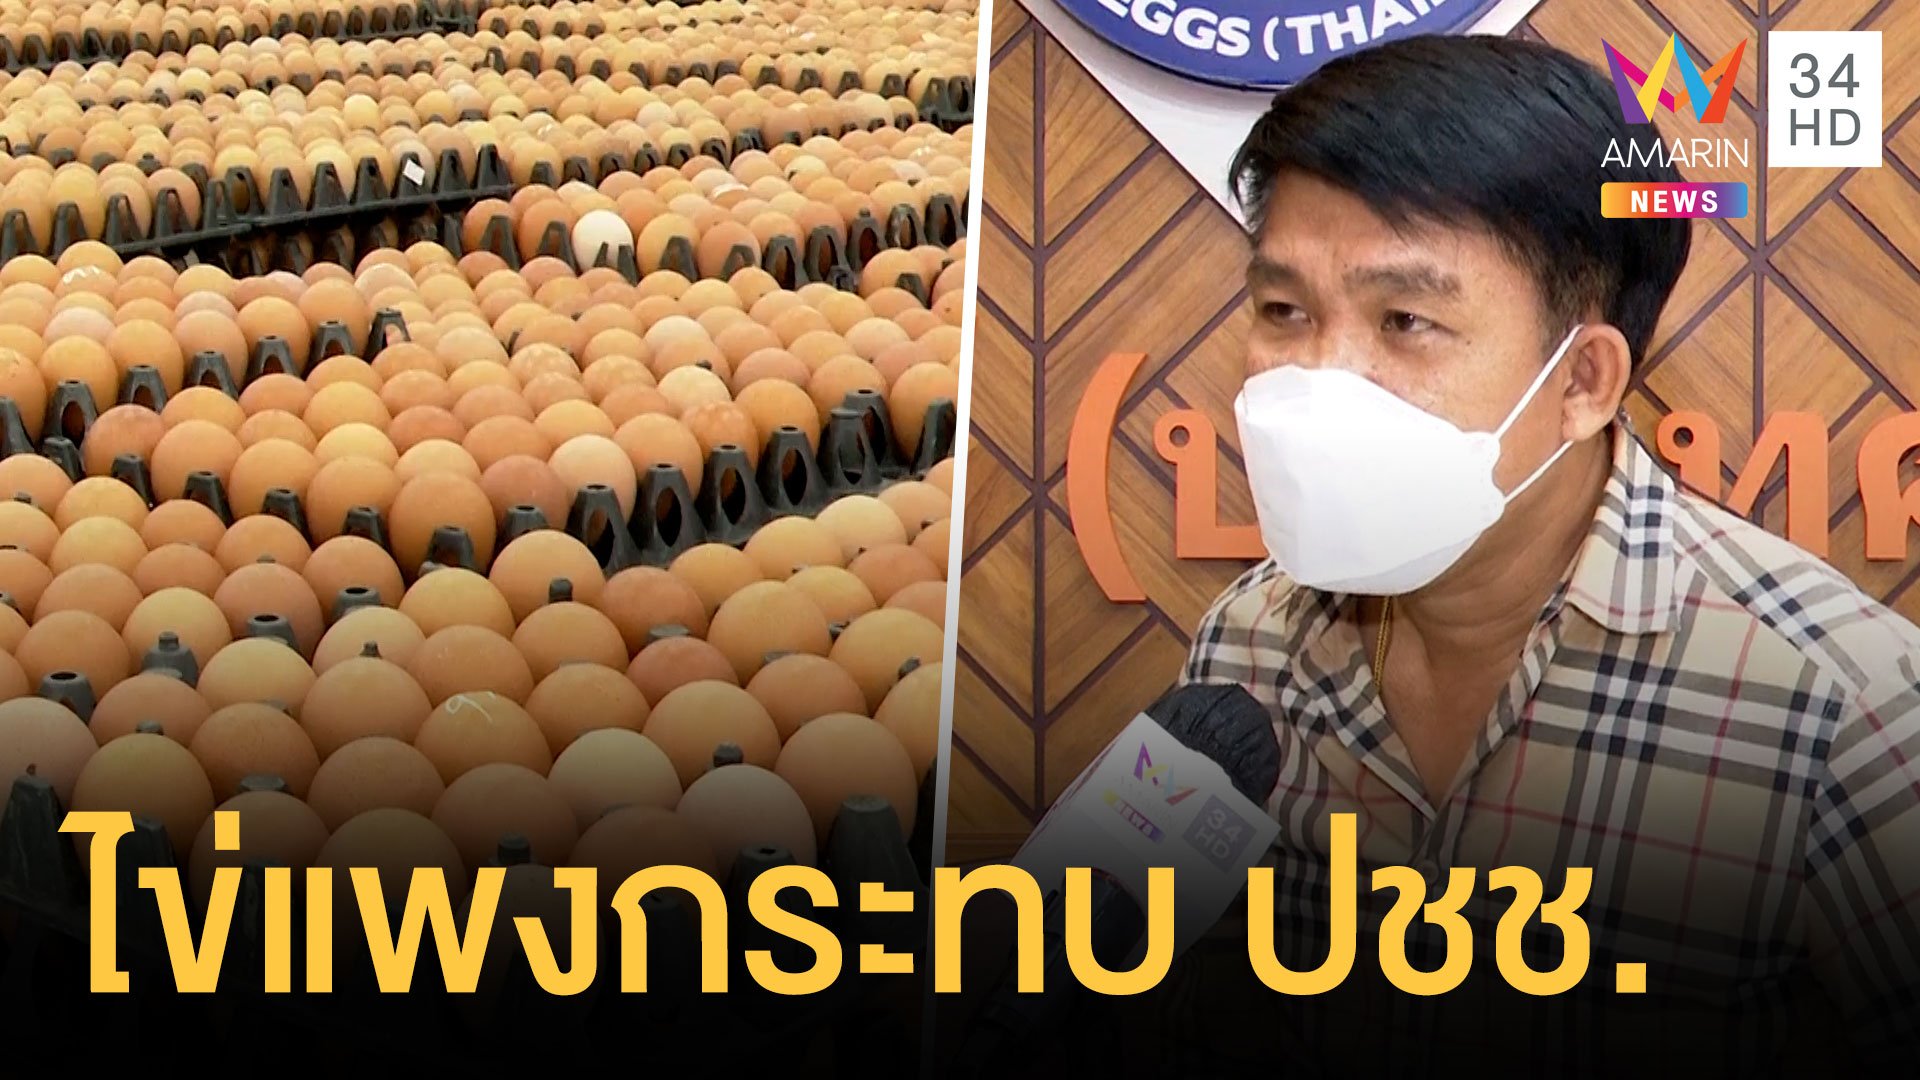 ไข่ไก่ขึ้นราคา ของแพงทั้งแผ่นดิน สวนทางค่าครองชีพ | ข่าวเที่ยงอมรินทร์ | 11 ม.ค. 65 | AMARIN TVHD34